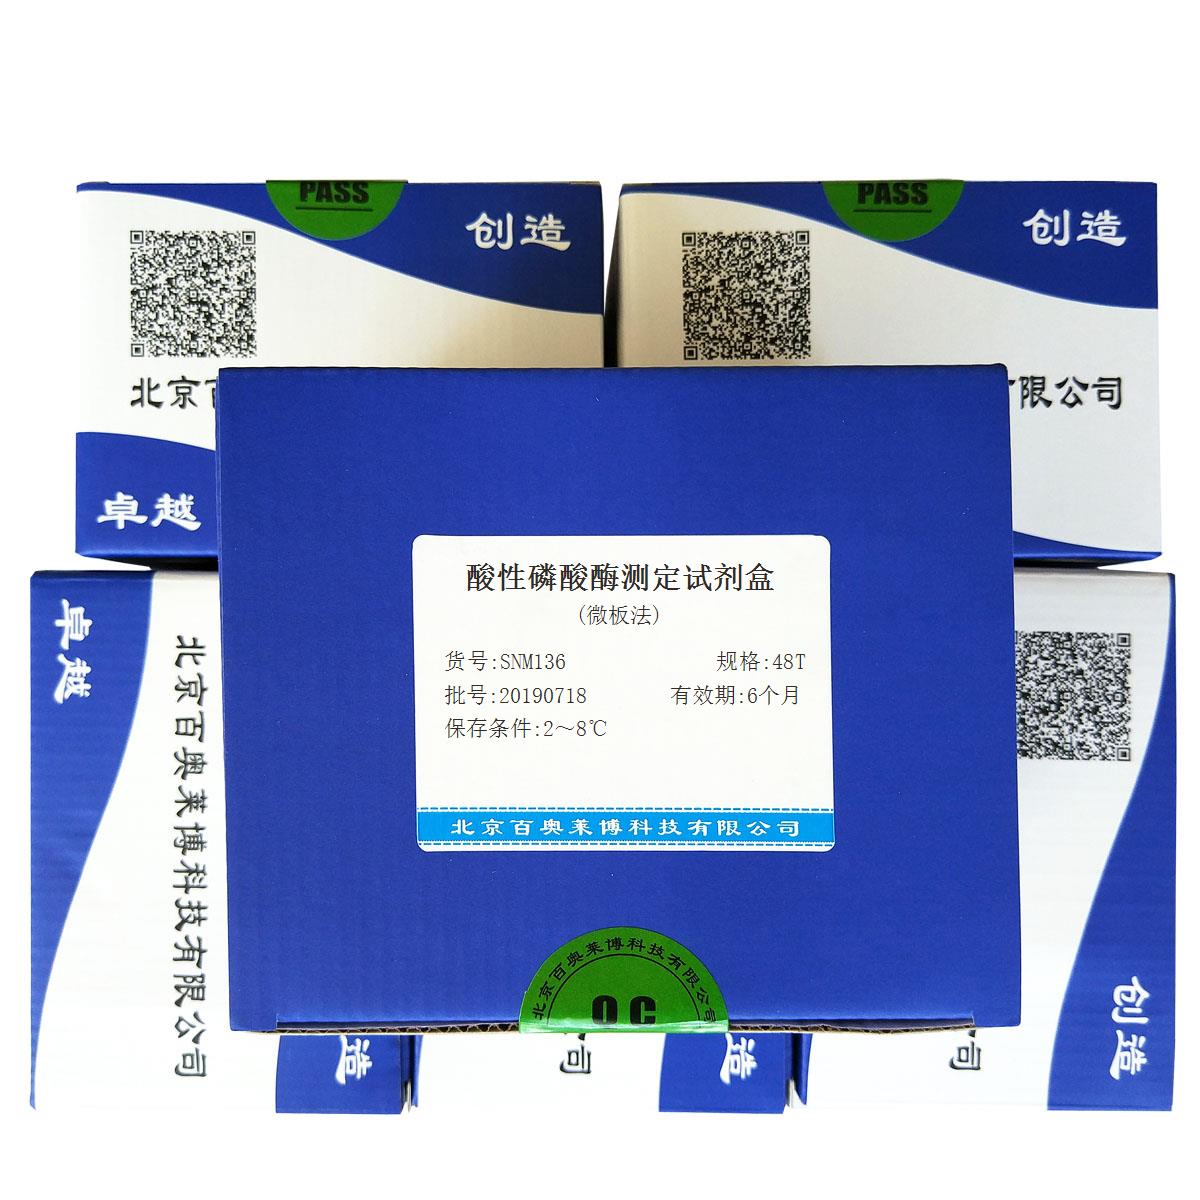 酸性磷酸酶测定试剂盒(微板法)优惠促销